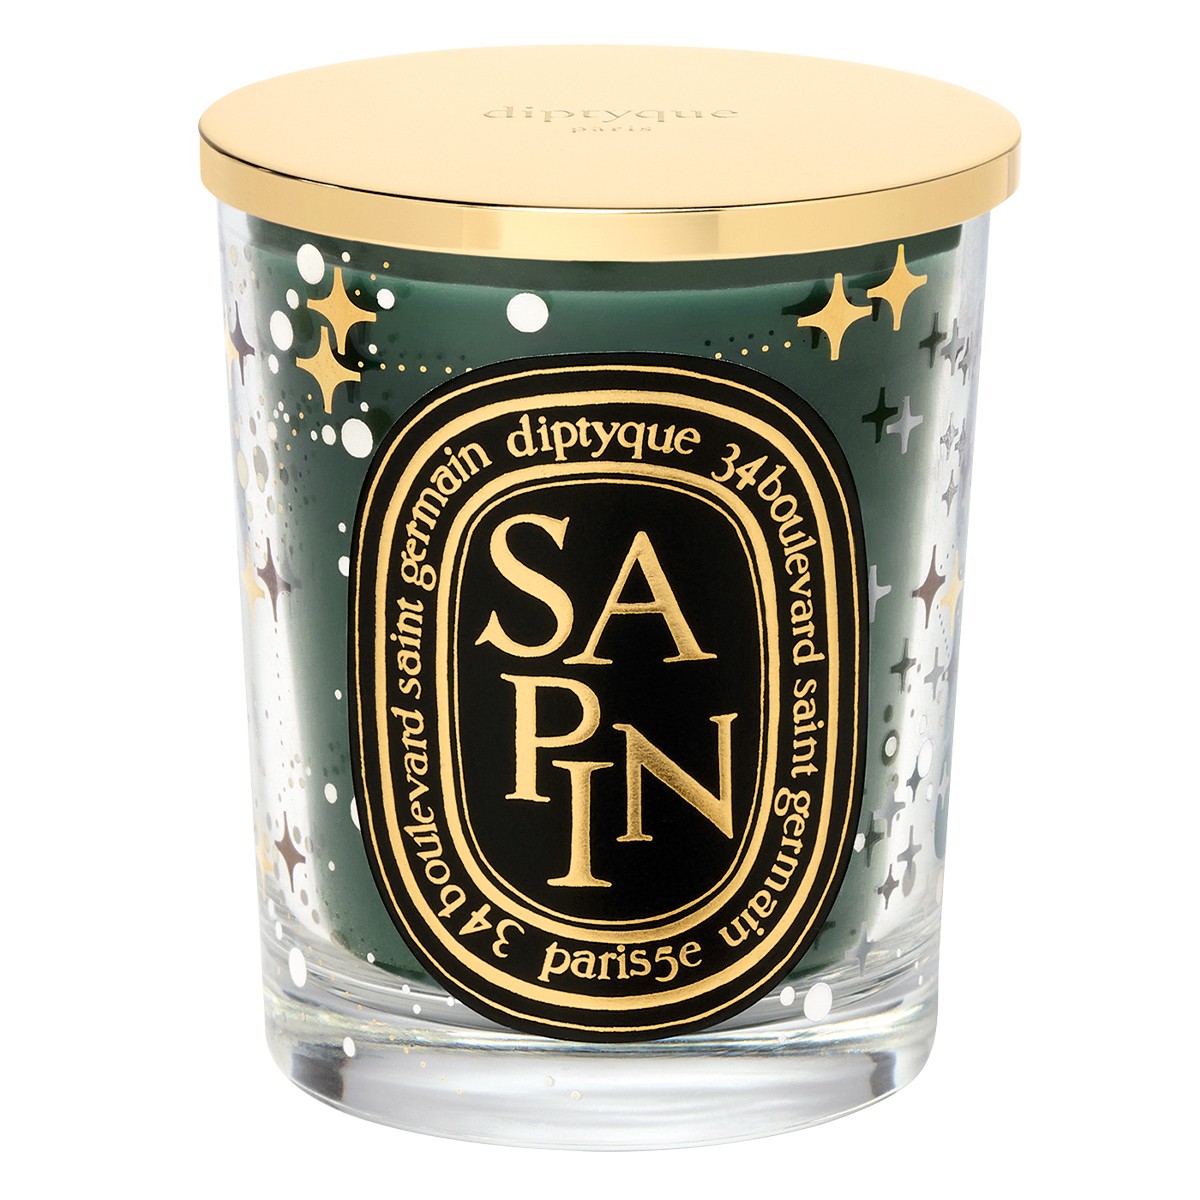 Diptyque Sapin Limited Edition - Vela perfumada con tapa (190g)